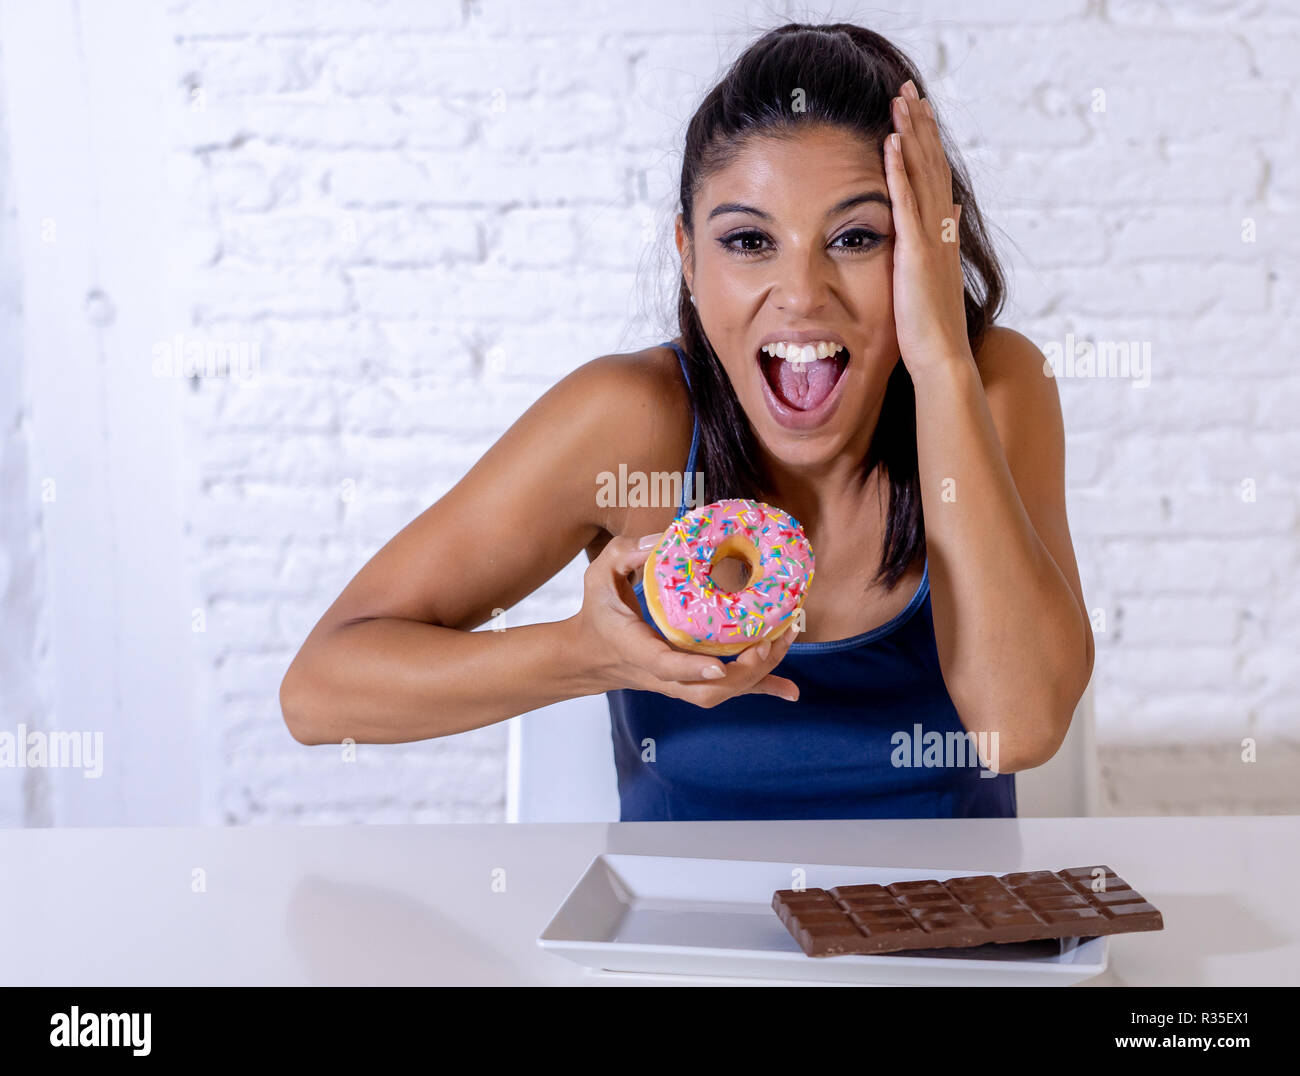 Young attractive woman sitting at table latine sur le point de manger du chocolat et des beignets à la excité et heureux en plus de l'alimentation, le sucre et l'unhealt chunky Banque D'Images